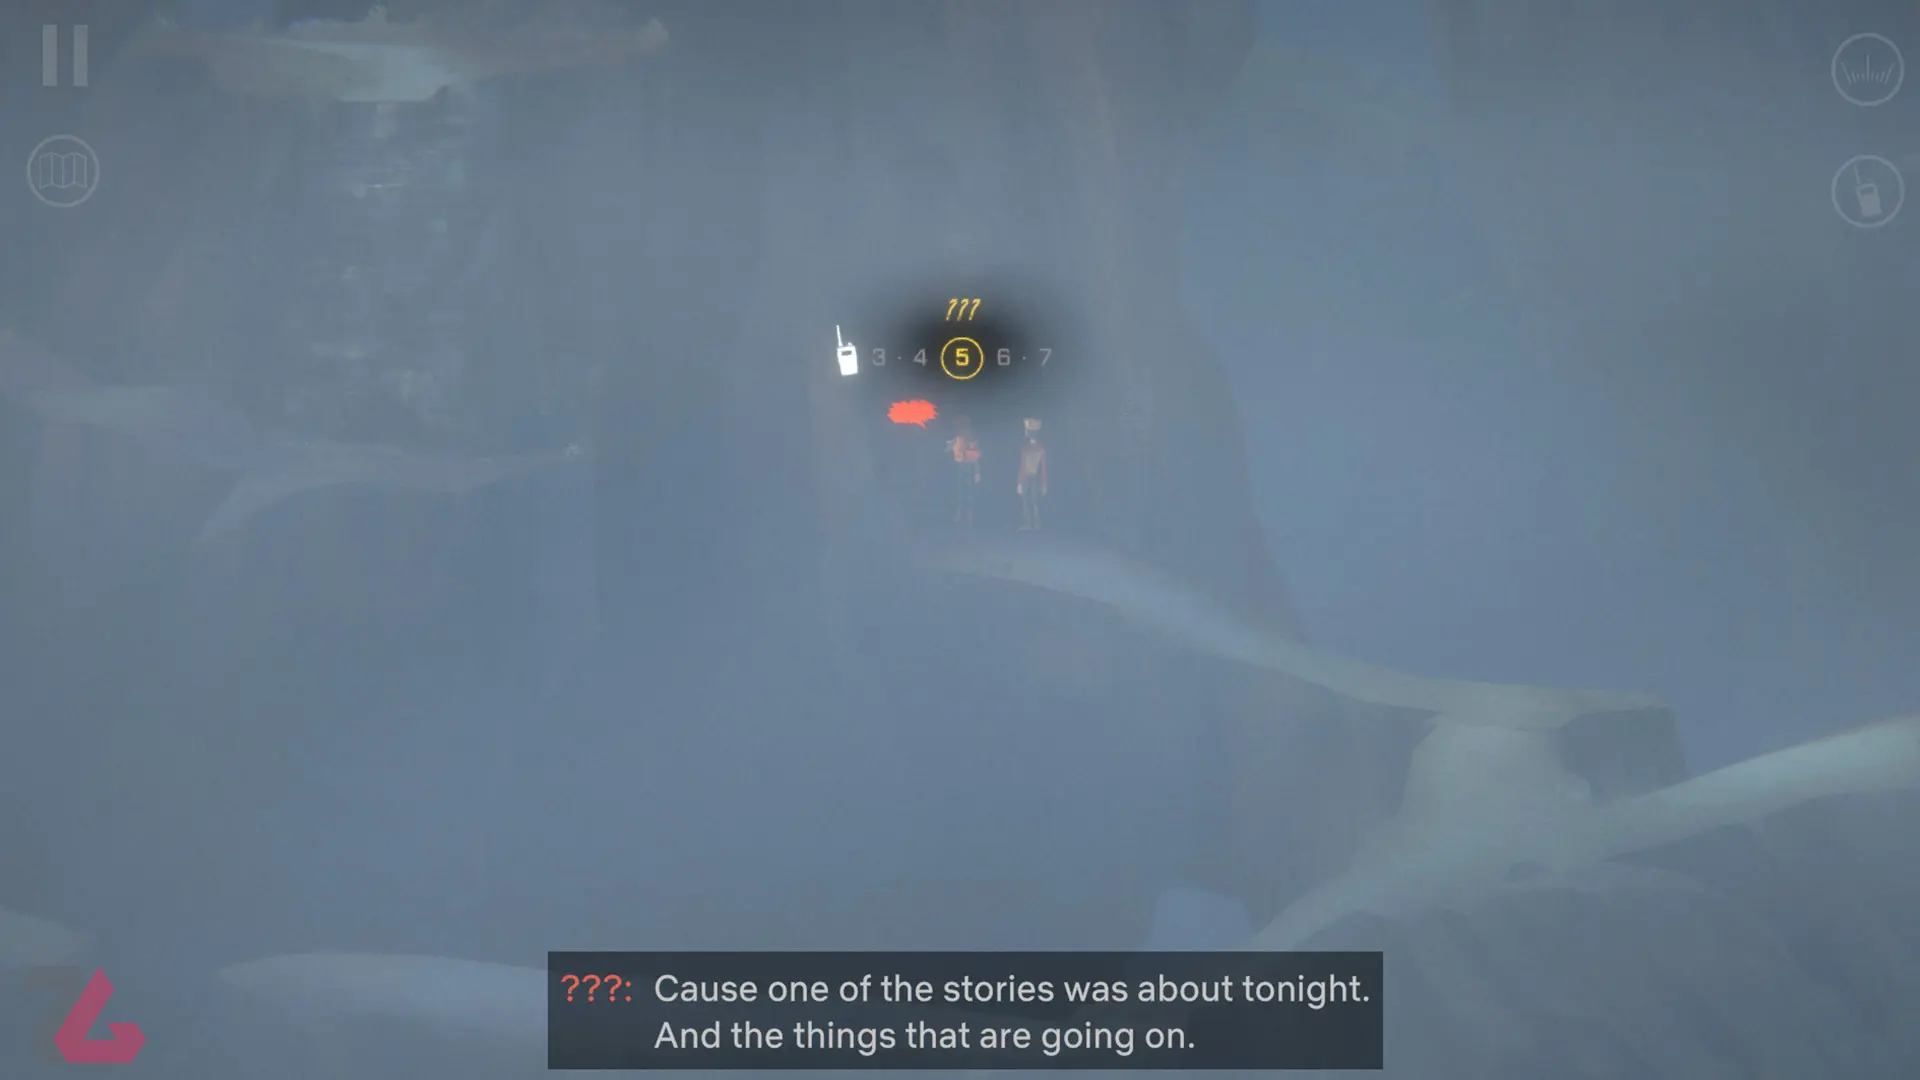 حرکت بین غارها در هوای مه آلود بازی Oxenfree II: Lost Signals